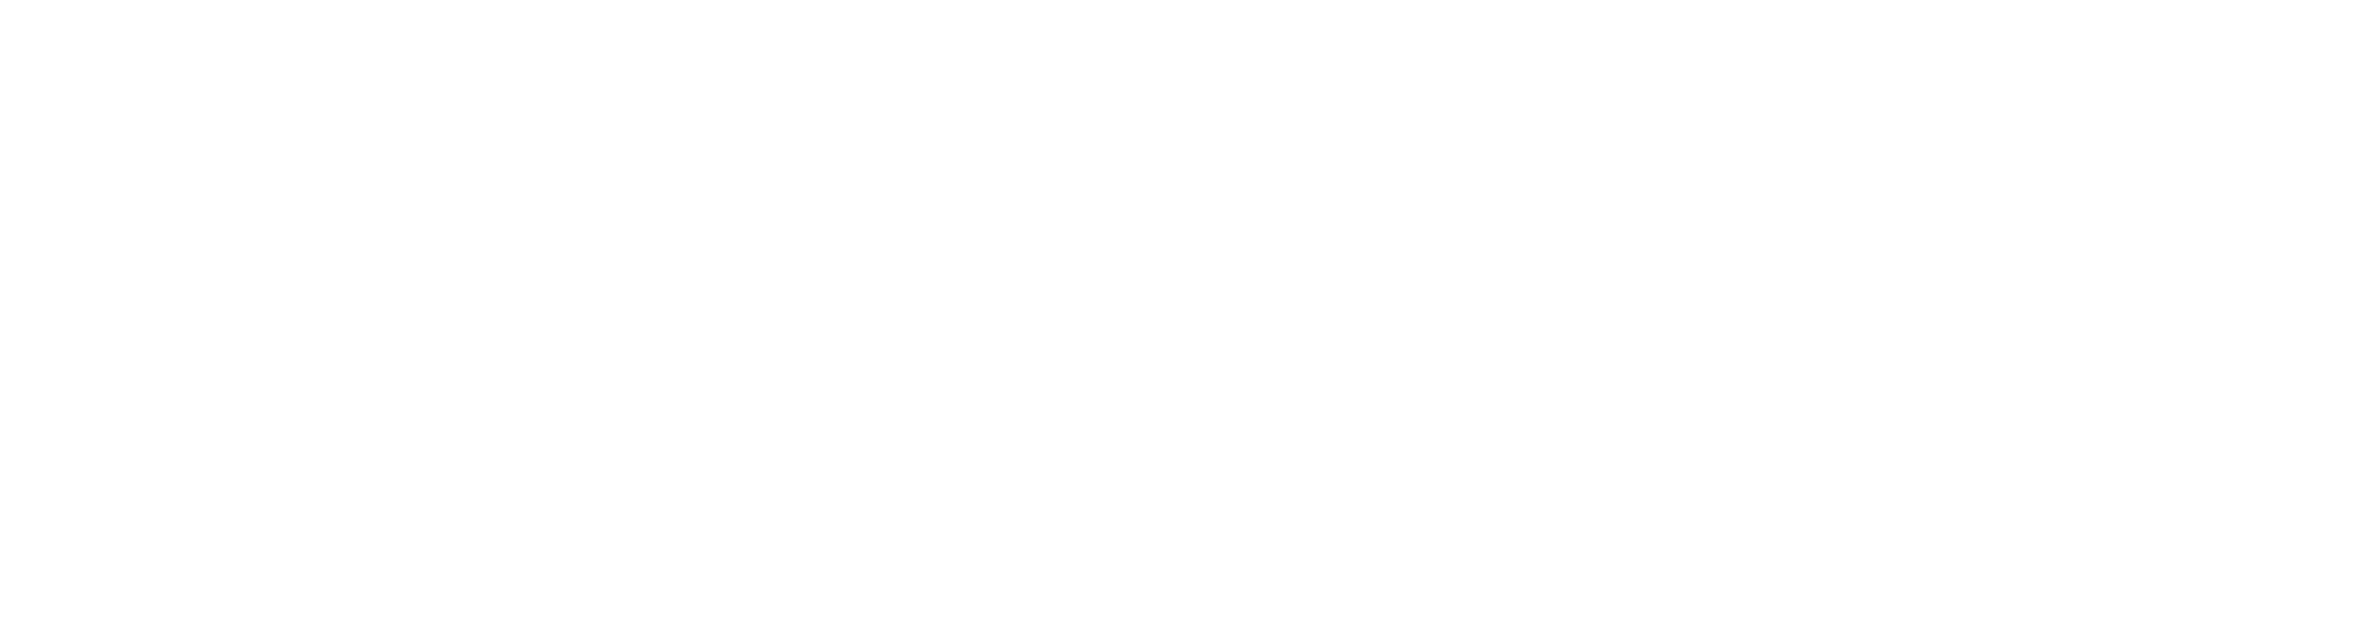 LockalSUP temp logo white